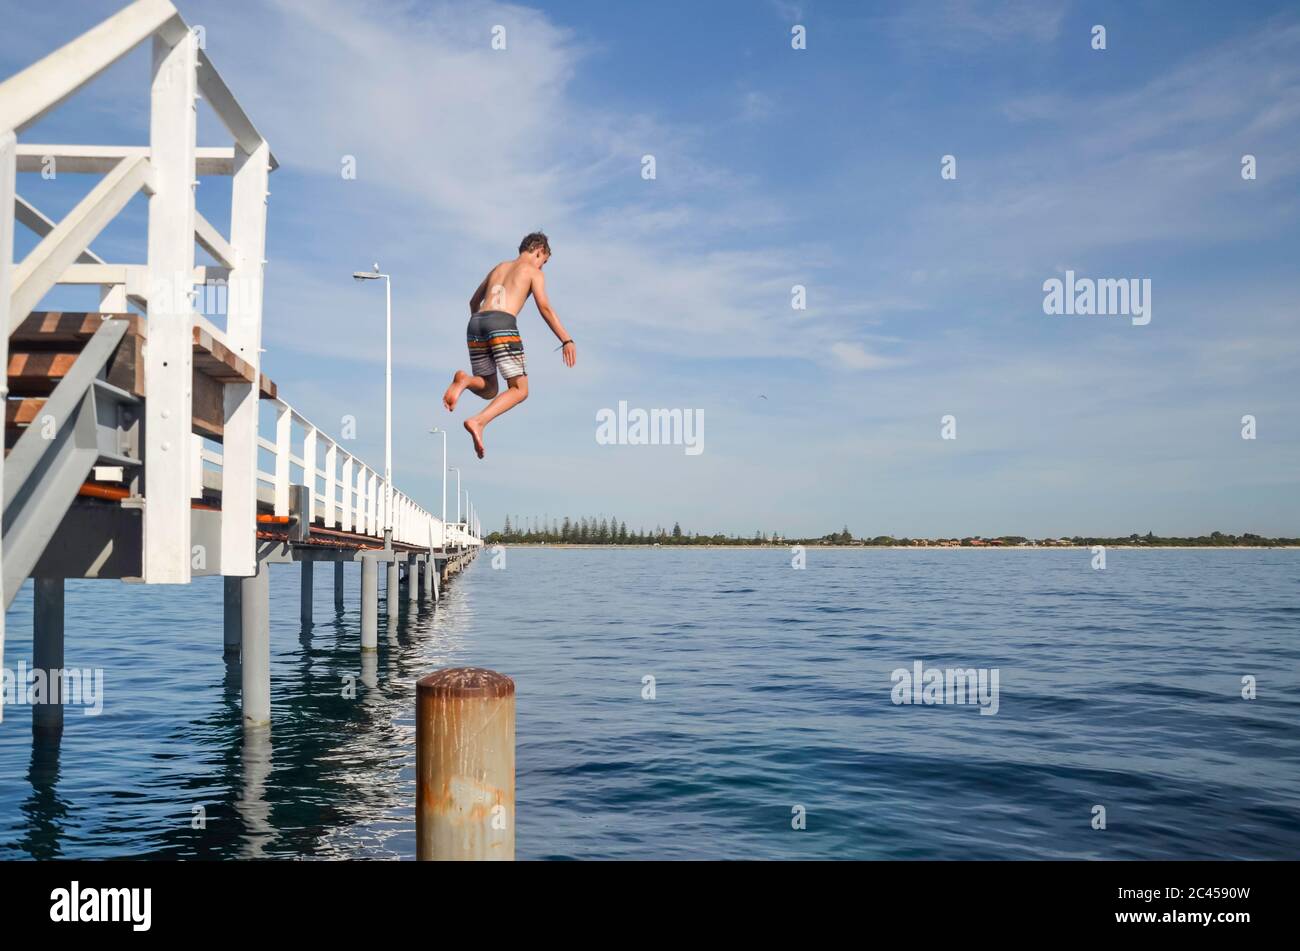 Un jeune garçon saute de la jetée de Busselton, longue de 1,8 km (la plus longue jetée en bois d'Australie) à Geographe Bay en Australie occidentale Banque D'Images